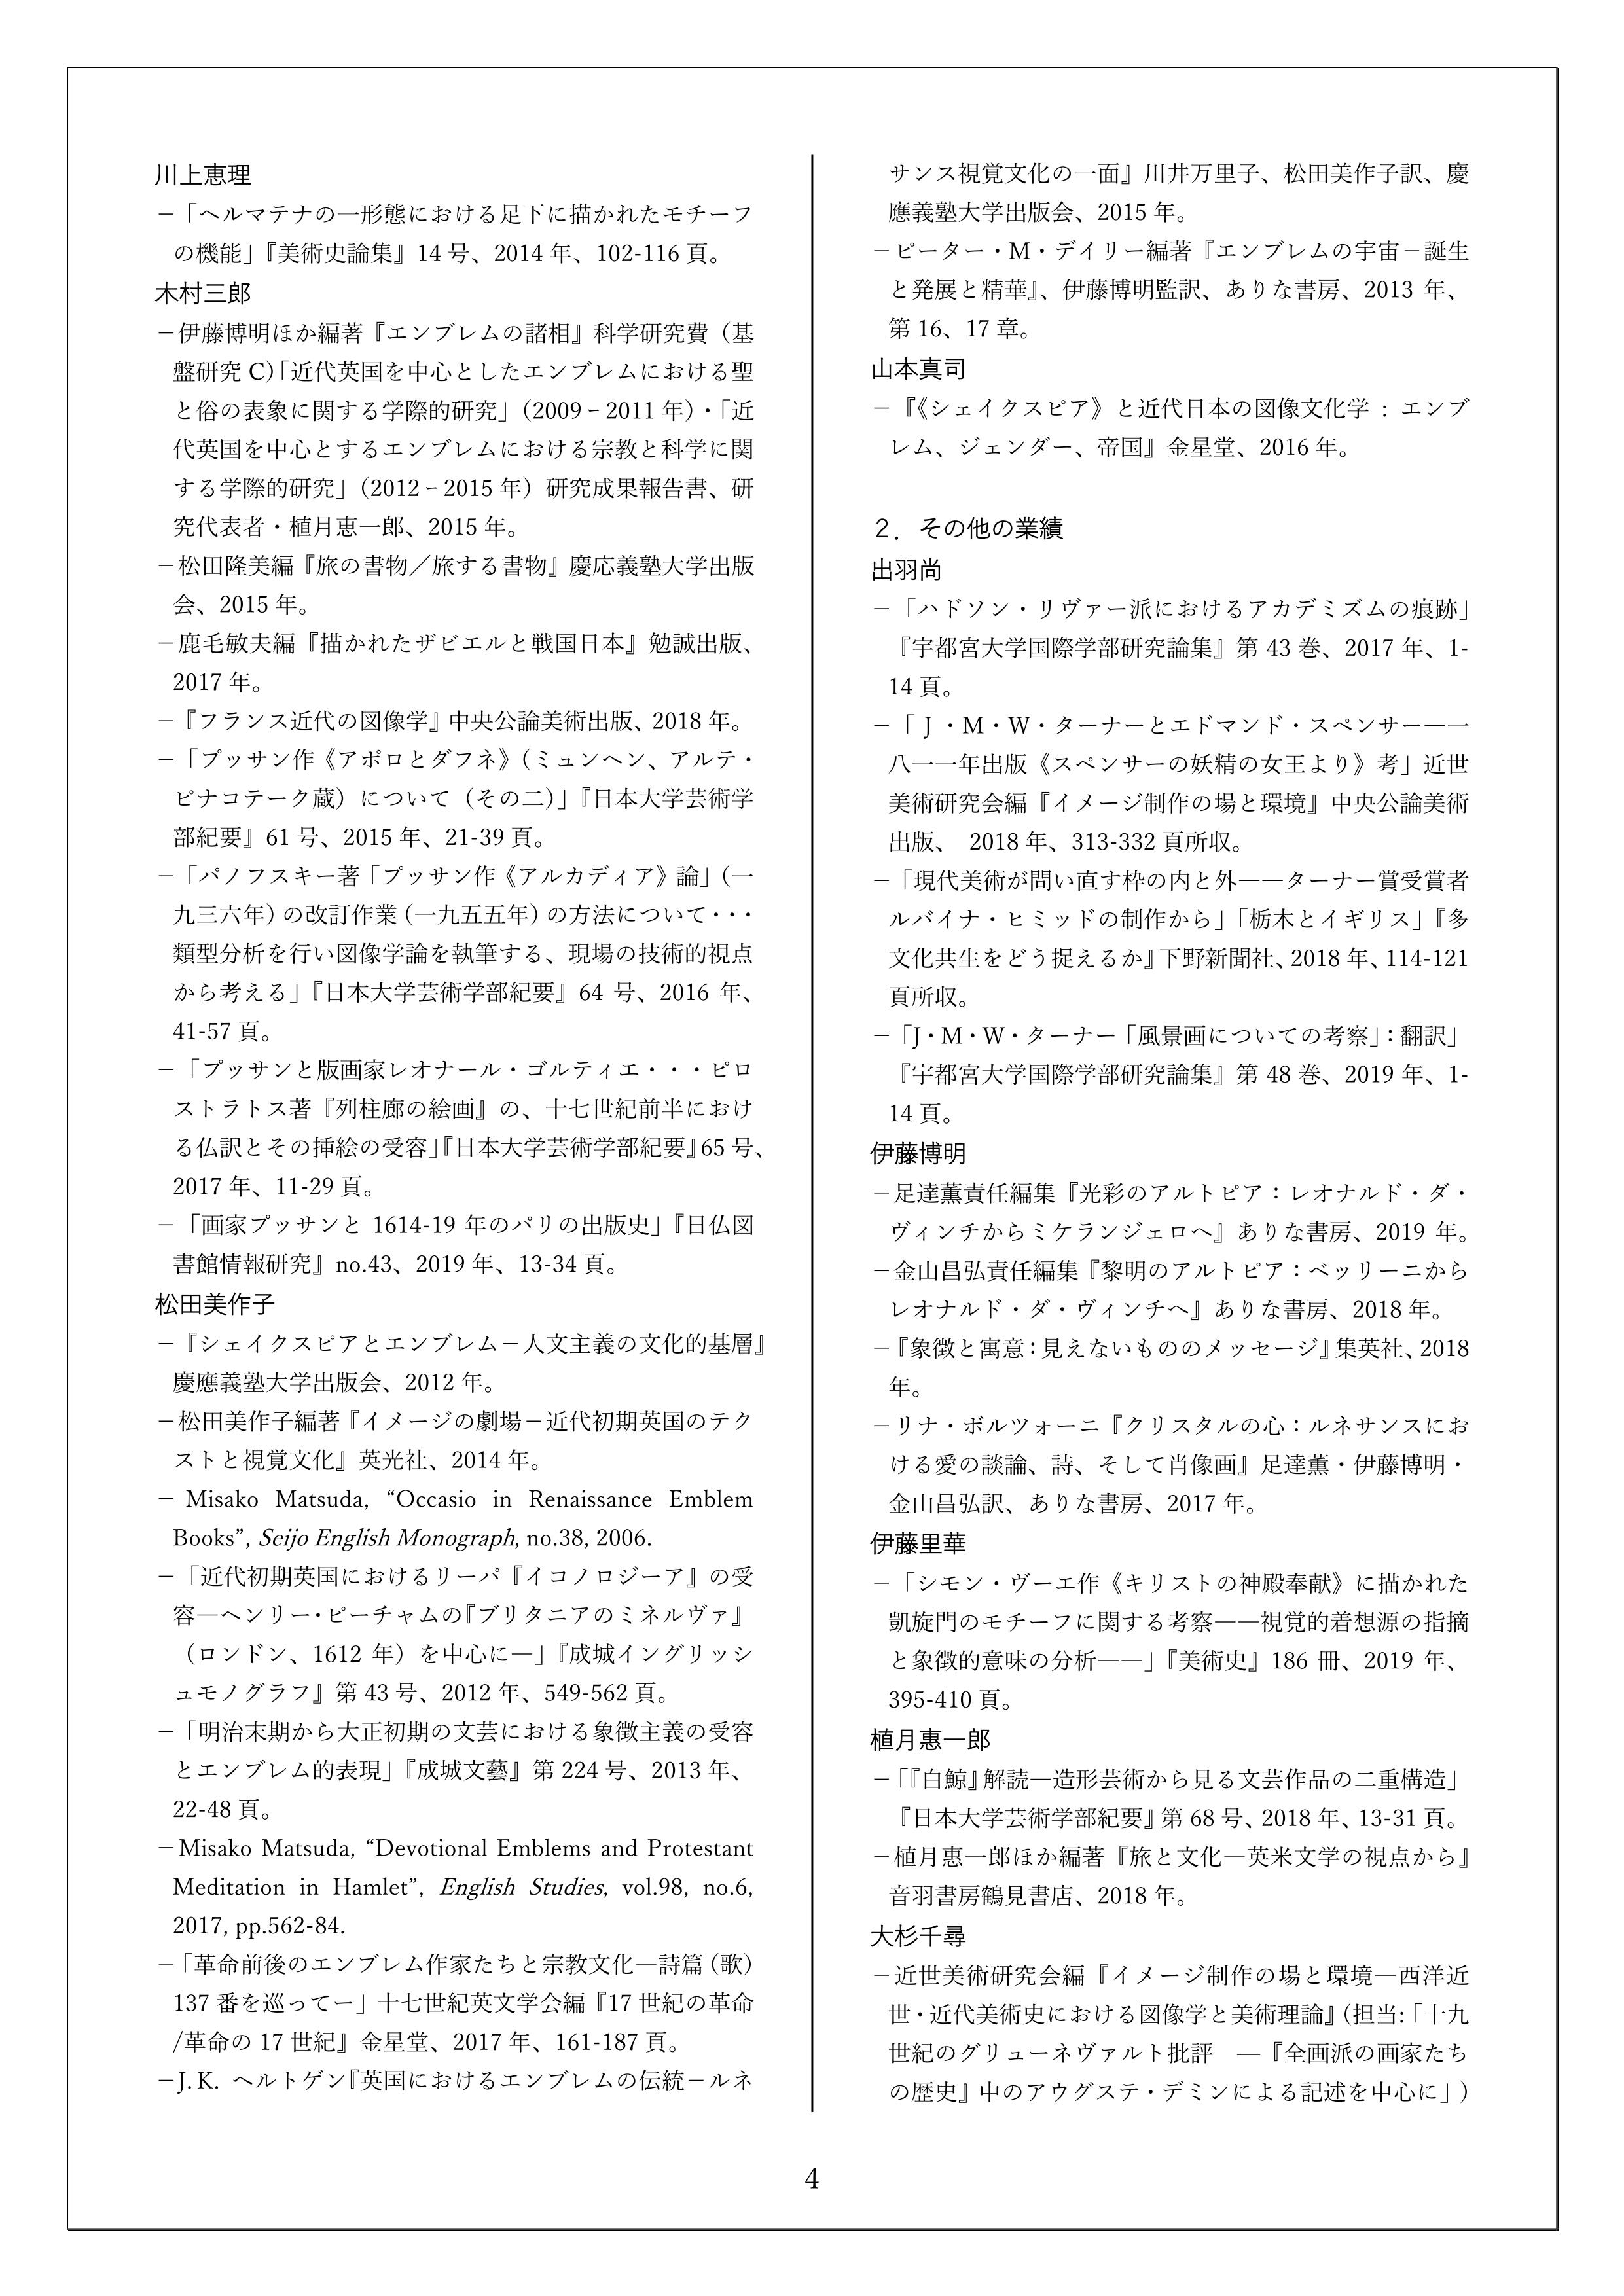 国際エンブレム協会日本支部「エンブレム研究会」 Homepage